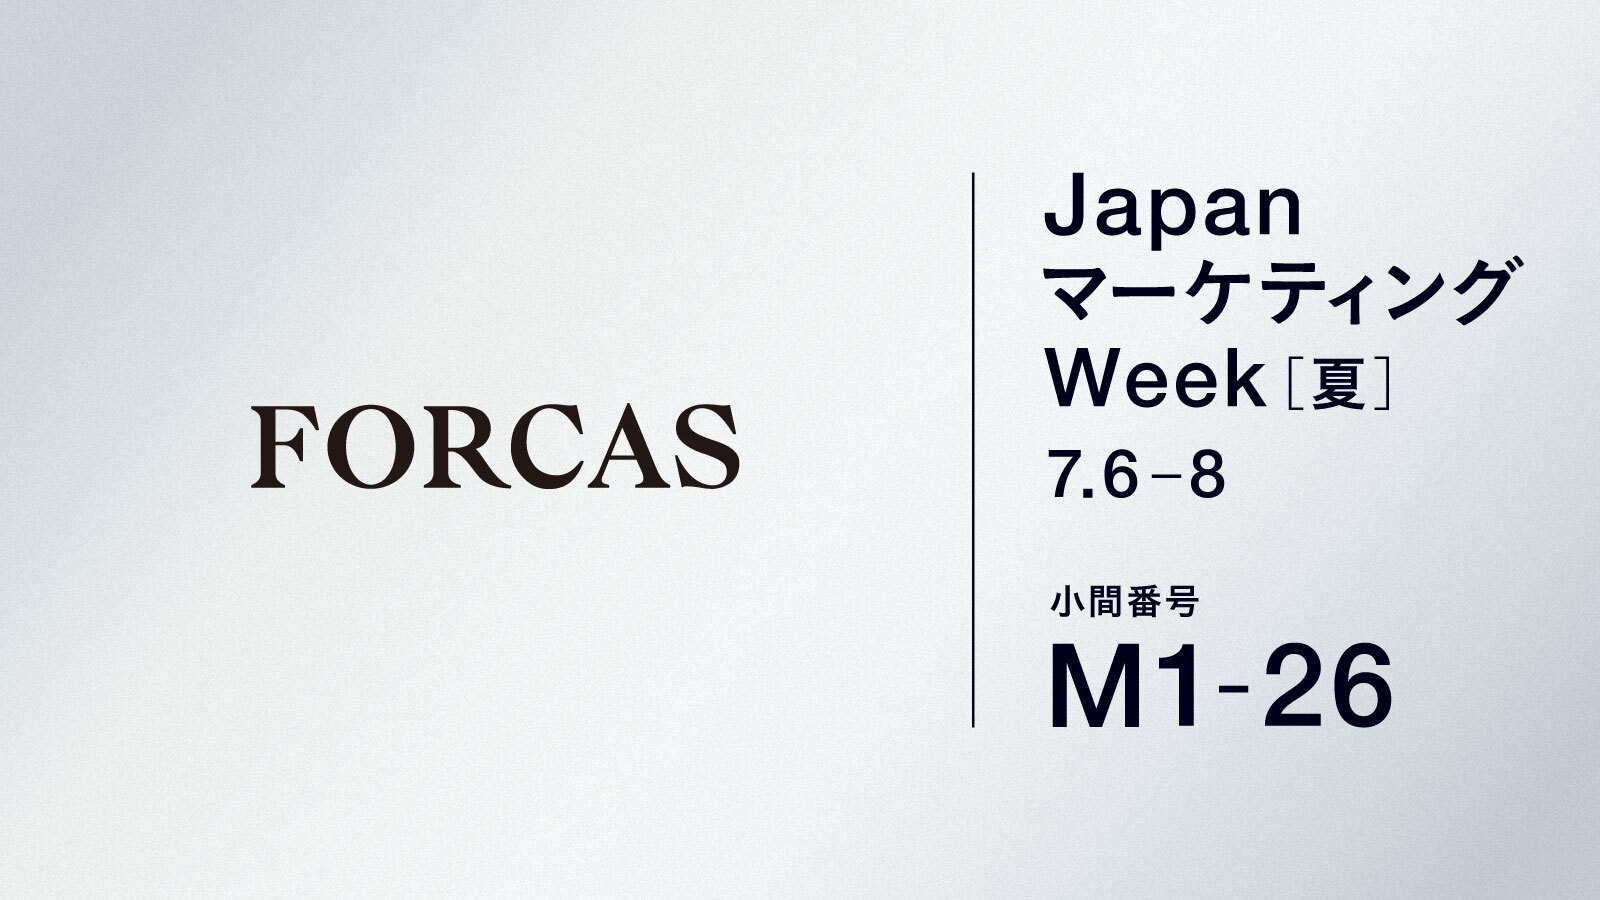 FORCASはオフライン展示会 Japan マーケティング Week 夏（7/6-8、東京ビッグサイト）に出展します